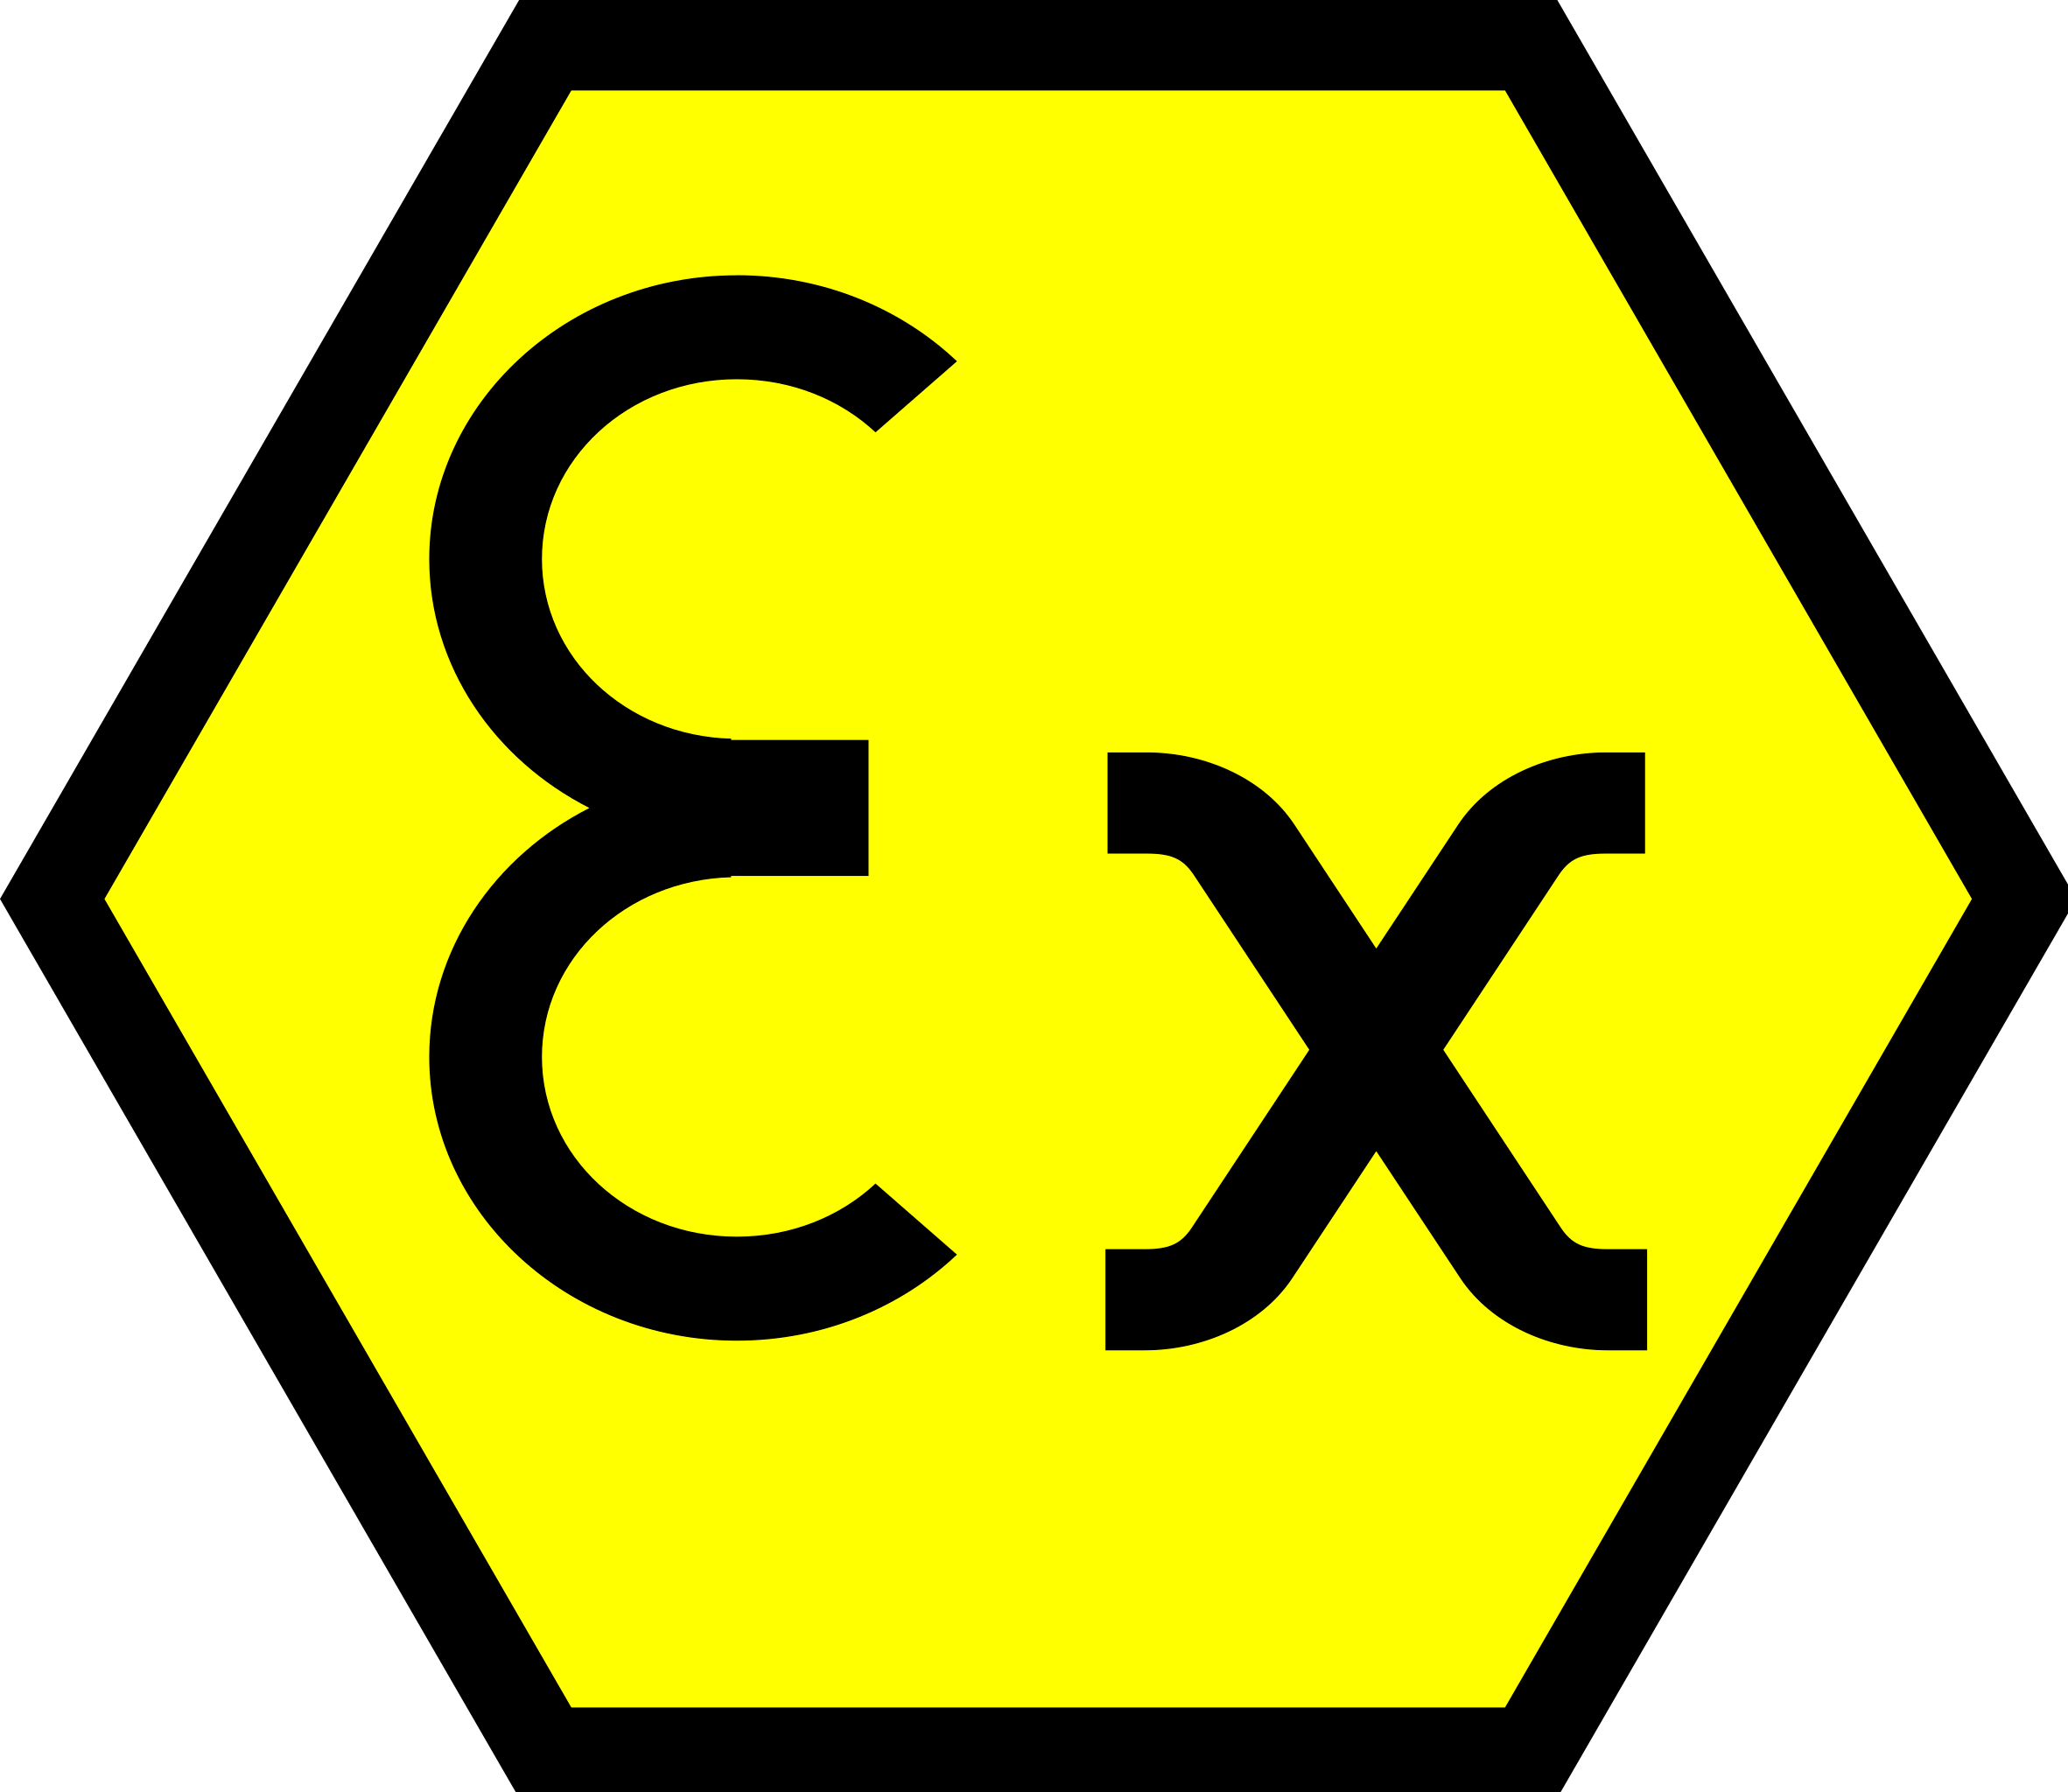 Atex direktiv för explosionsfarligt damm